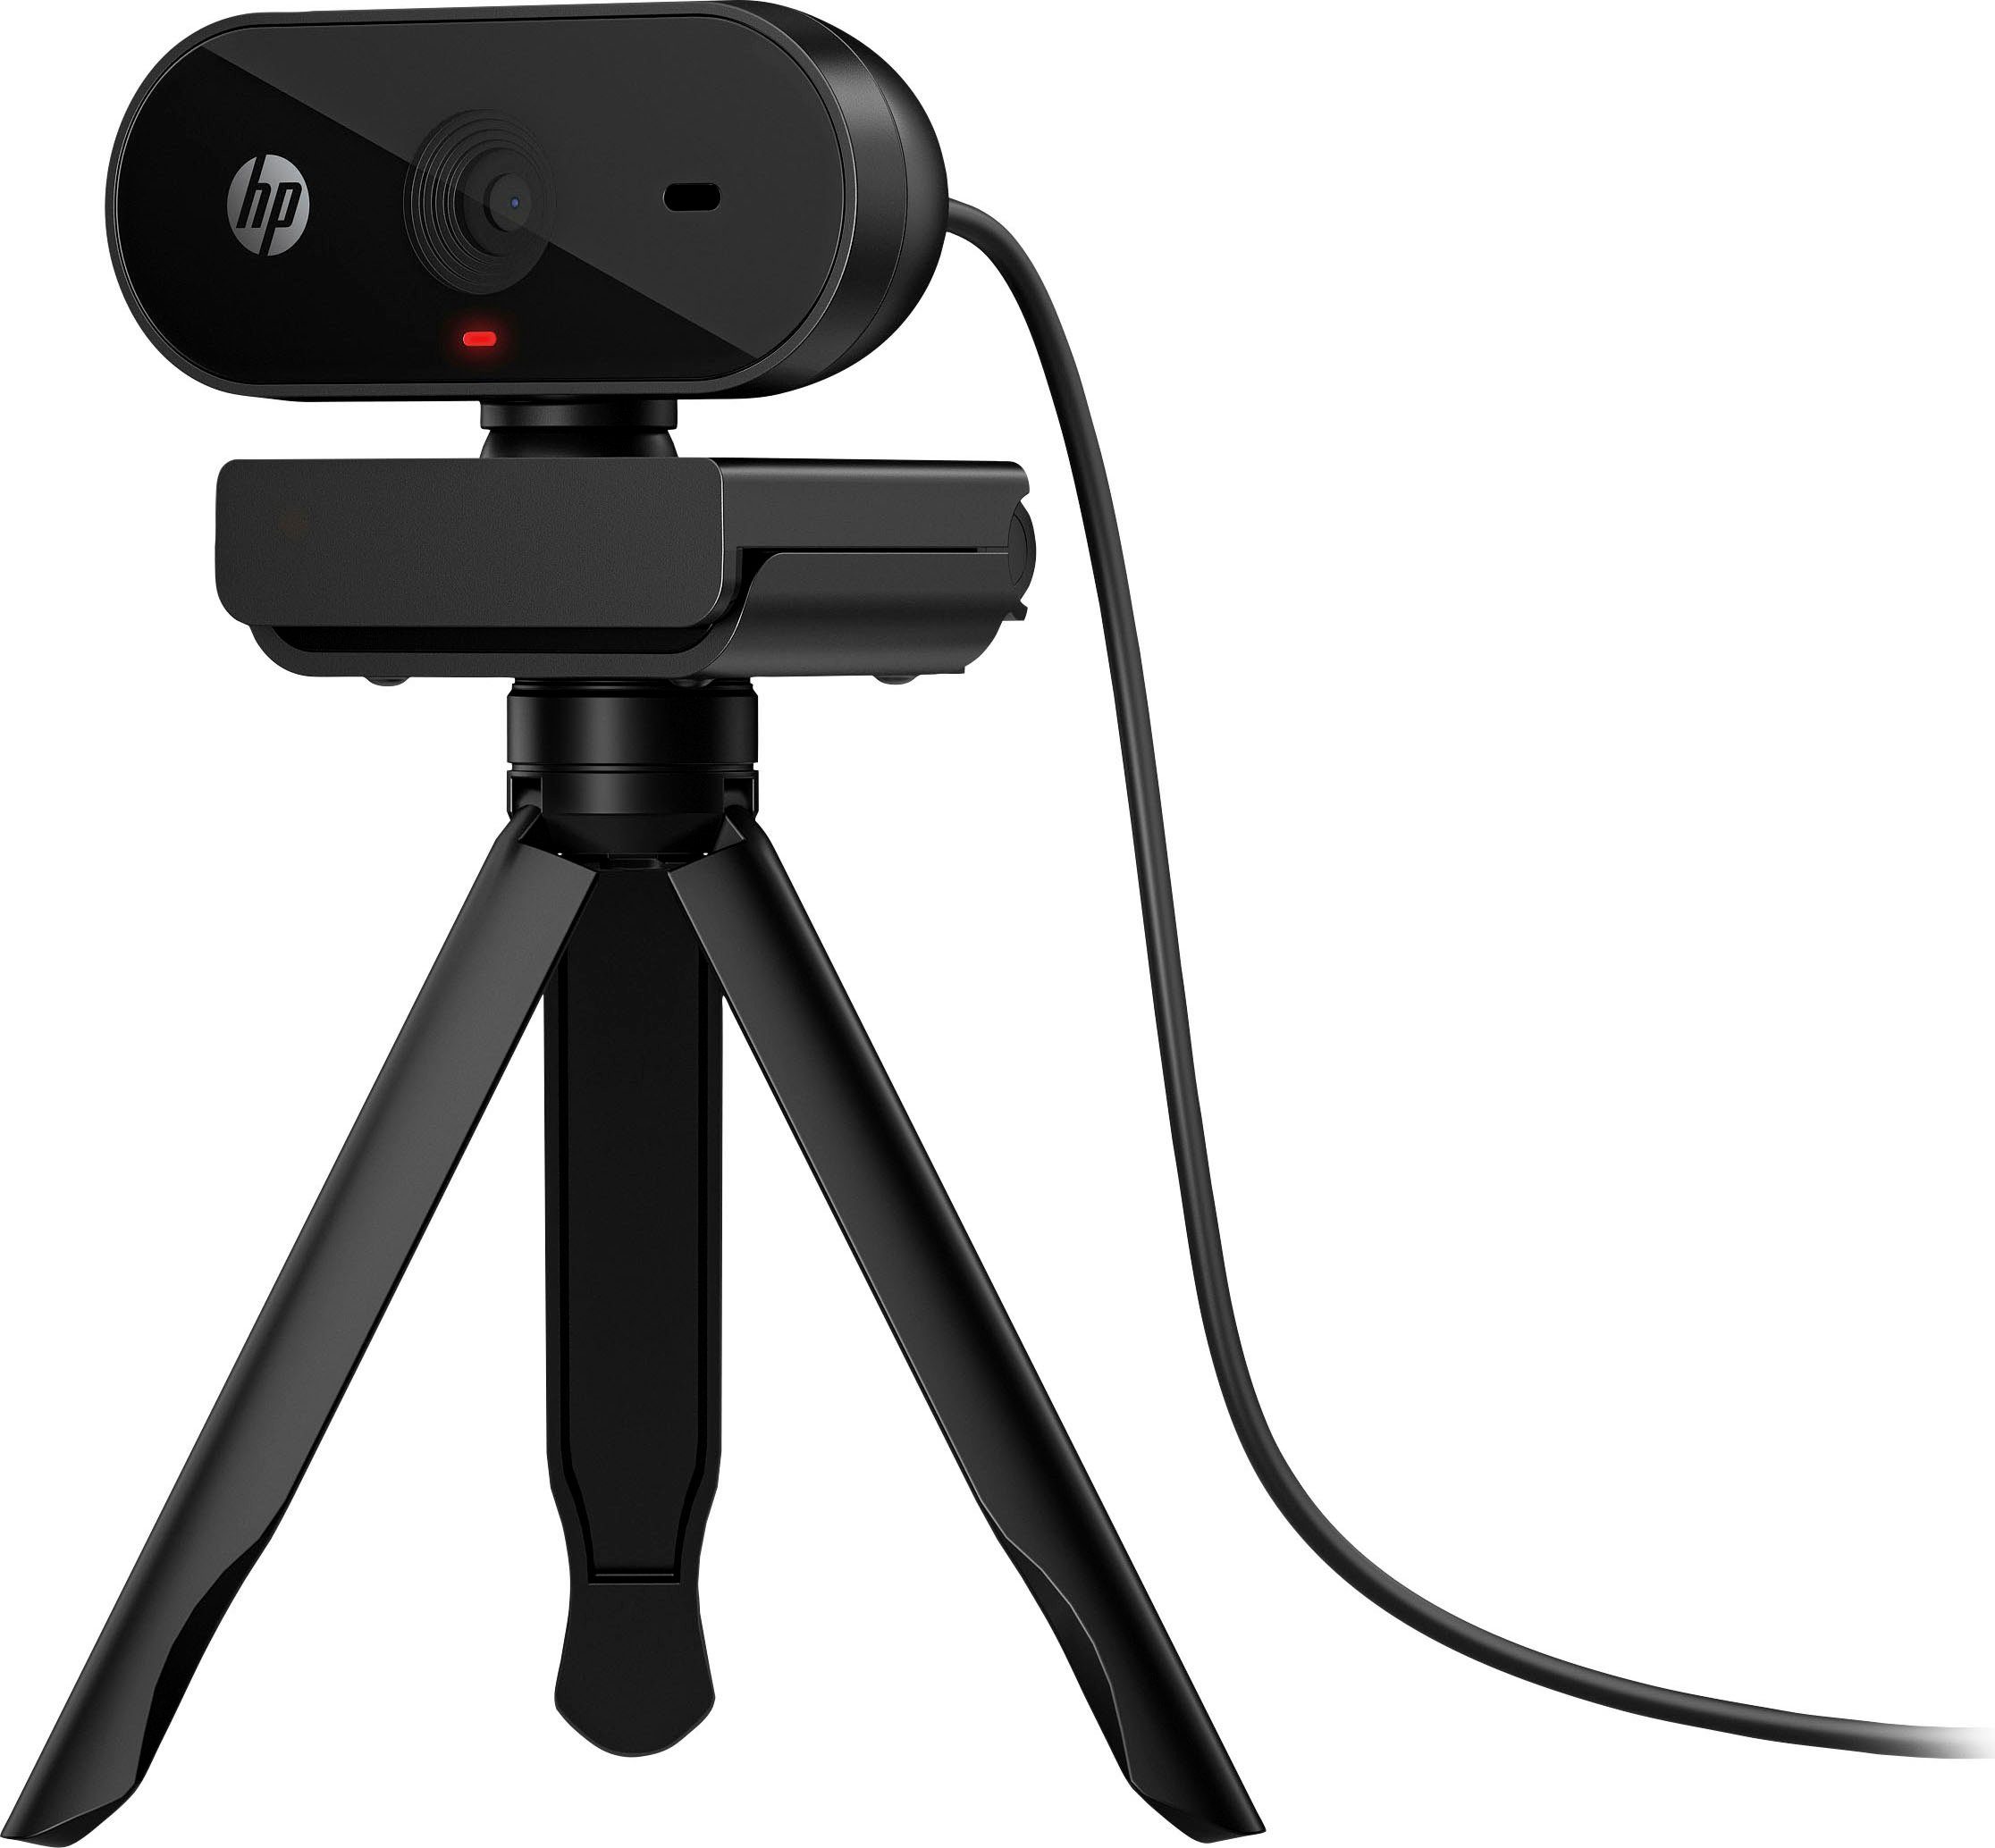 FHD Webcam Webcam HP 320